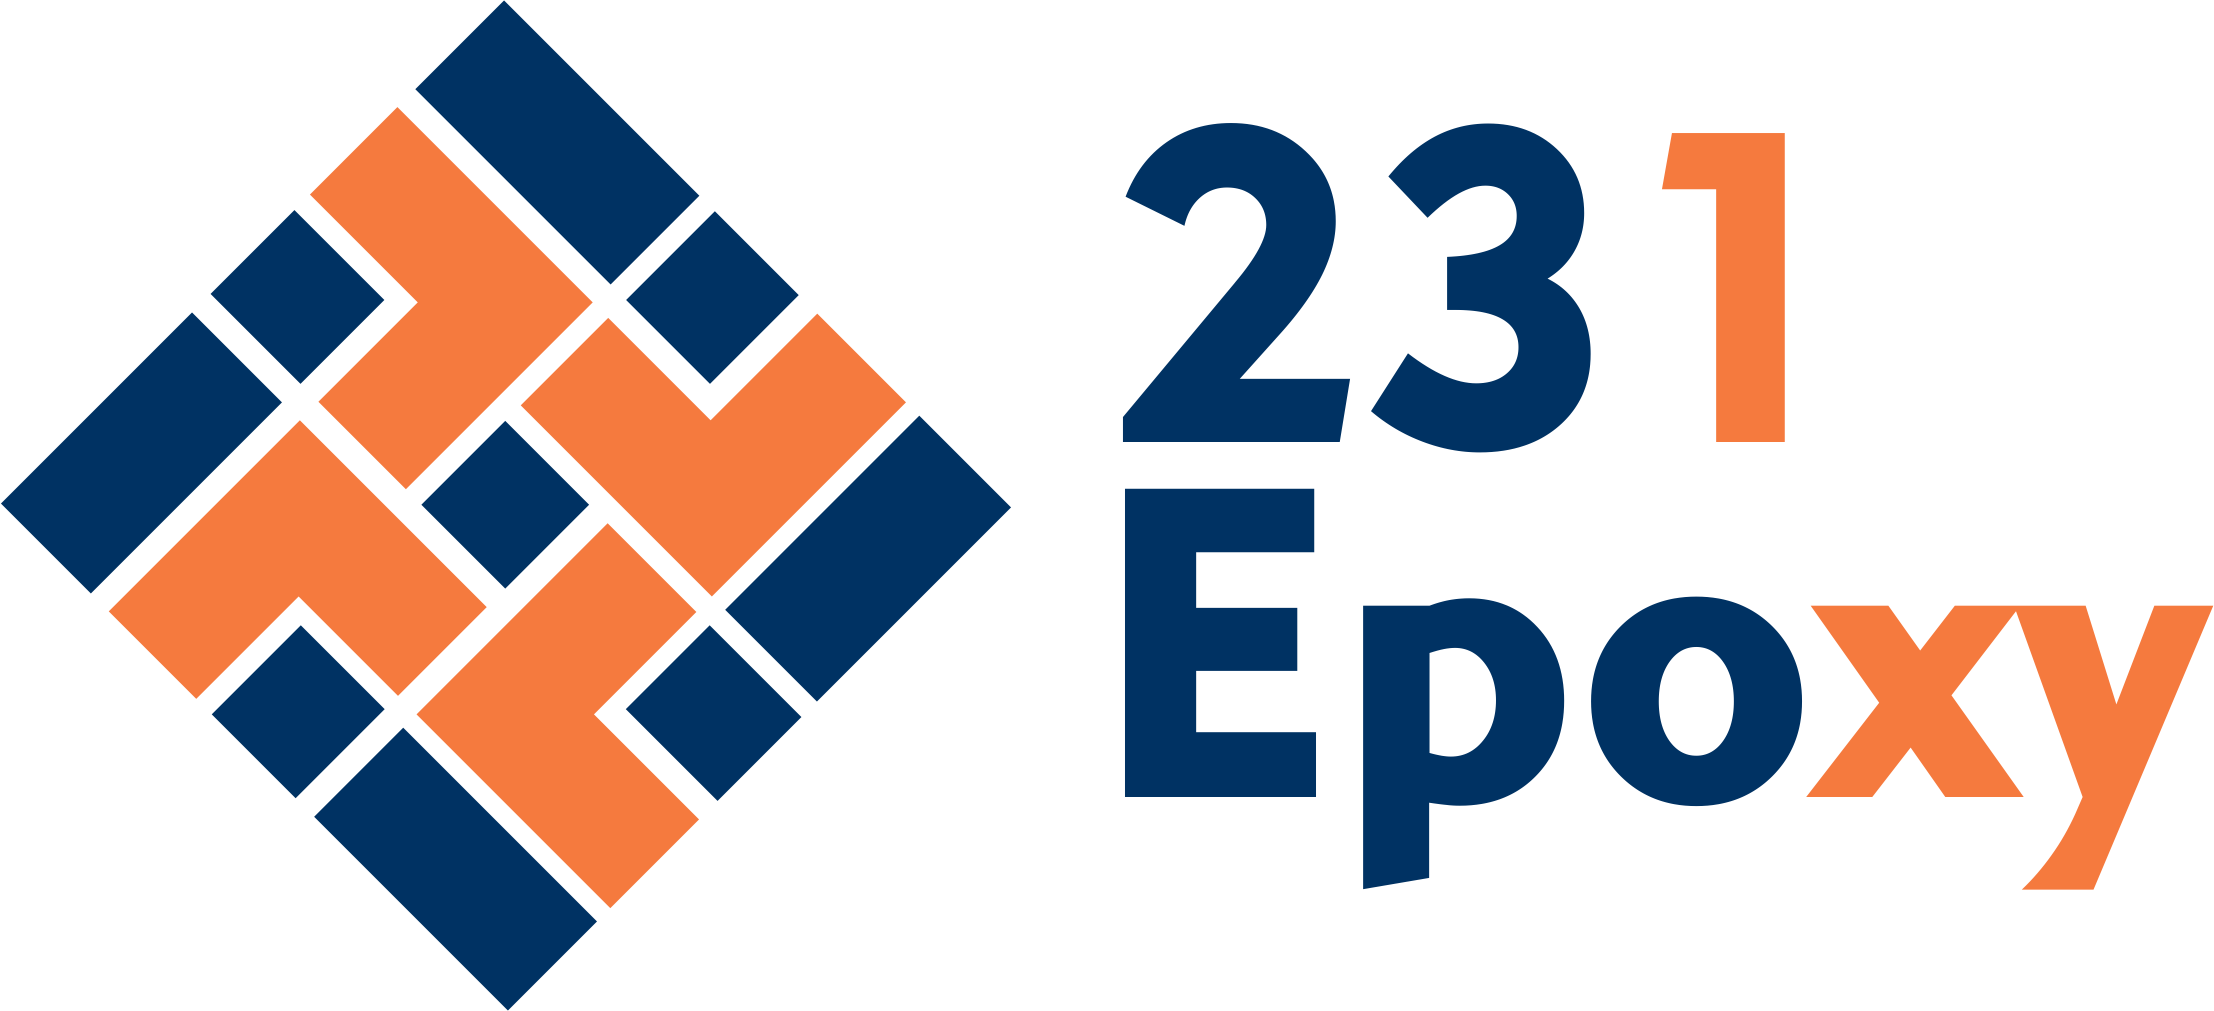 231 Epoxy Logo